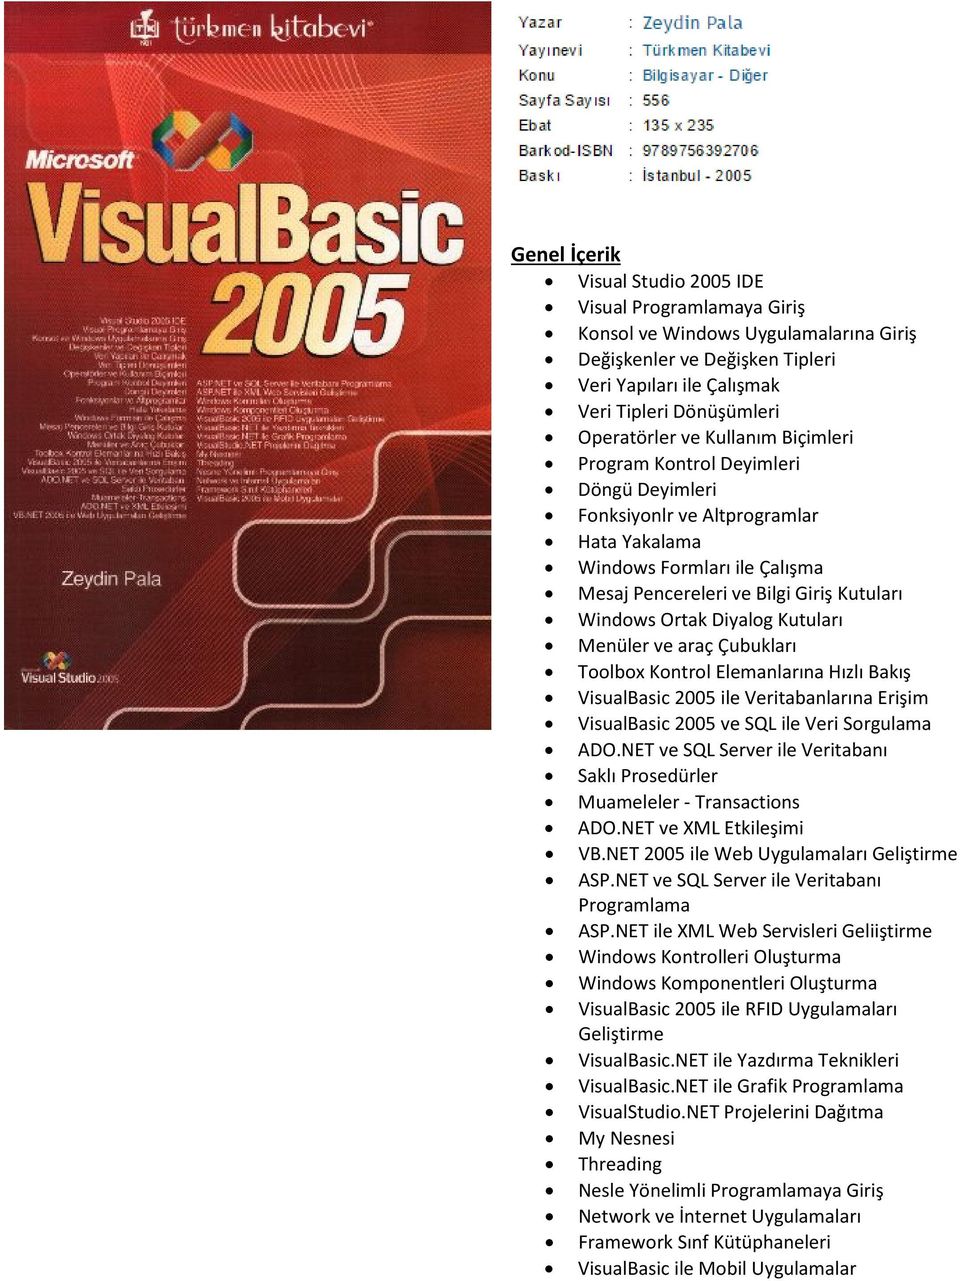 Kutuları Menüler ve araç Çubukları Toolbox Kontrol Elemanlarına Hızlı Bakış VisualBasic 2005 ile Veritabanlarına Erişim VisualBasic 2005 ve SQL ile Veri Sorgulama ADO.